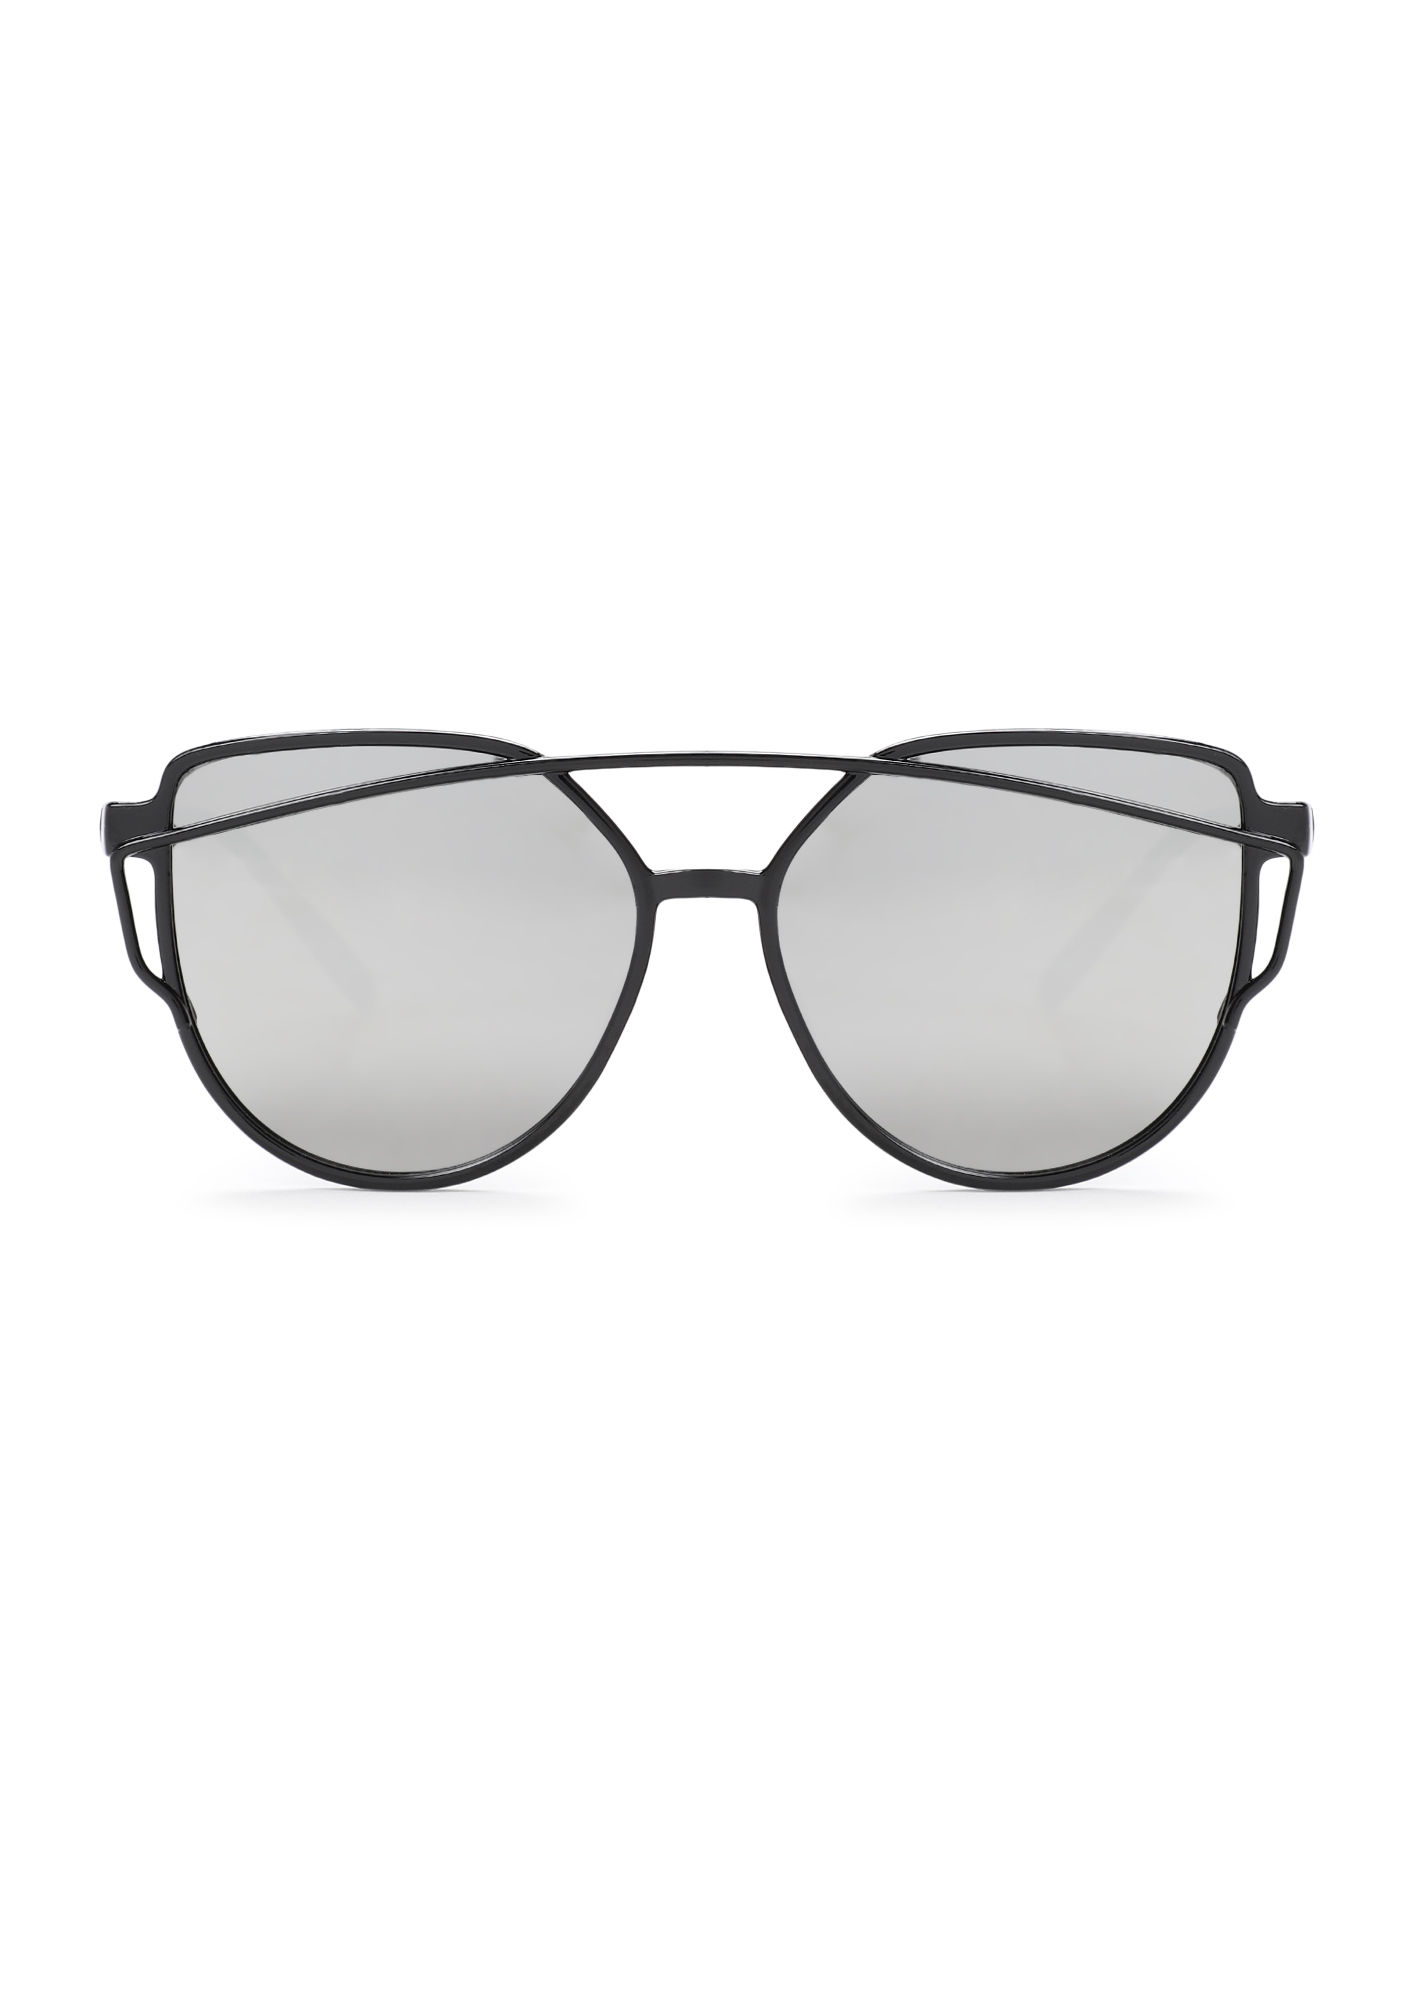 Saint Laurent - D-Frame Acetate Mirrored Sunglasses - Silver Saint Laurent